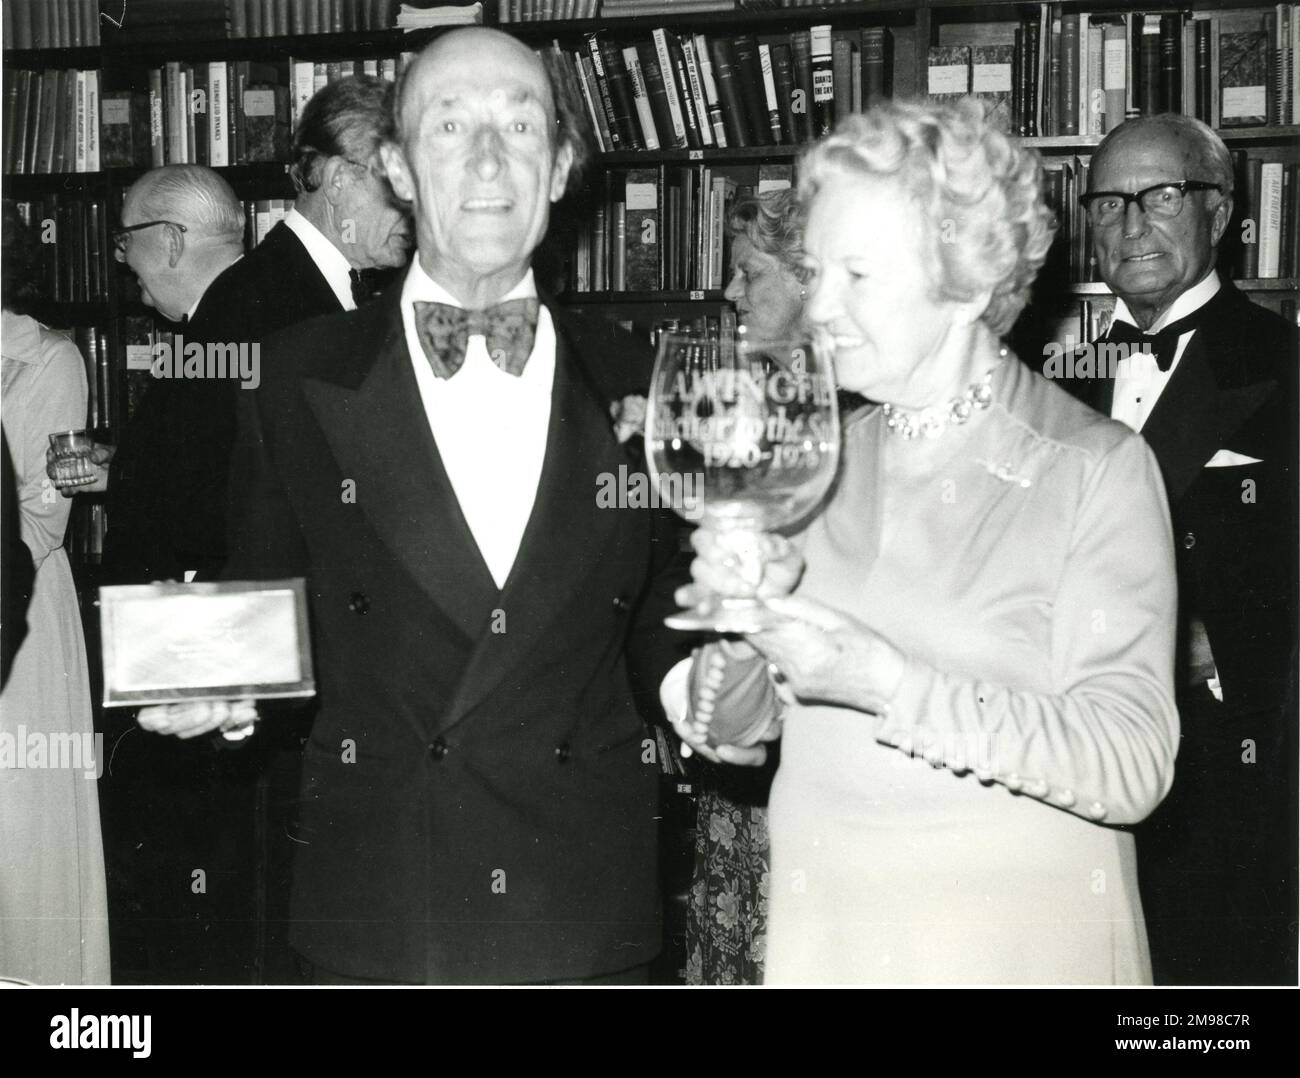 Auf der Tagung des Royal Aeronautical Society Council am 30. September 1976 wurde Lawrie Wingfield ein Daum-Kristallbecher überreicht, um seinen Ruhestand als Anwalt der Gesellschaft nach 56 Jahren Dienst zu feiern. Er wird hier mit seiner Frau gesehen. Stockfoto